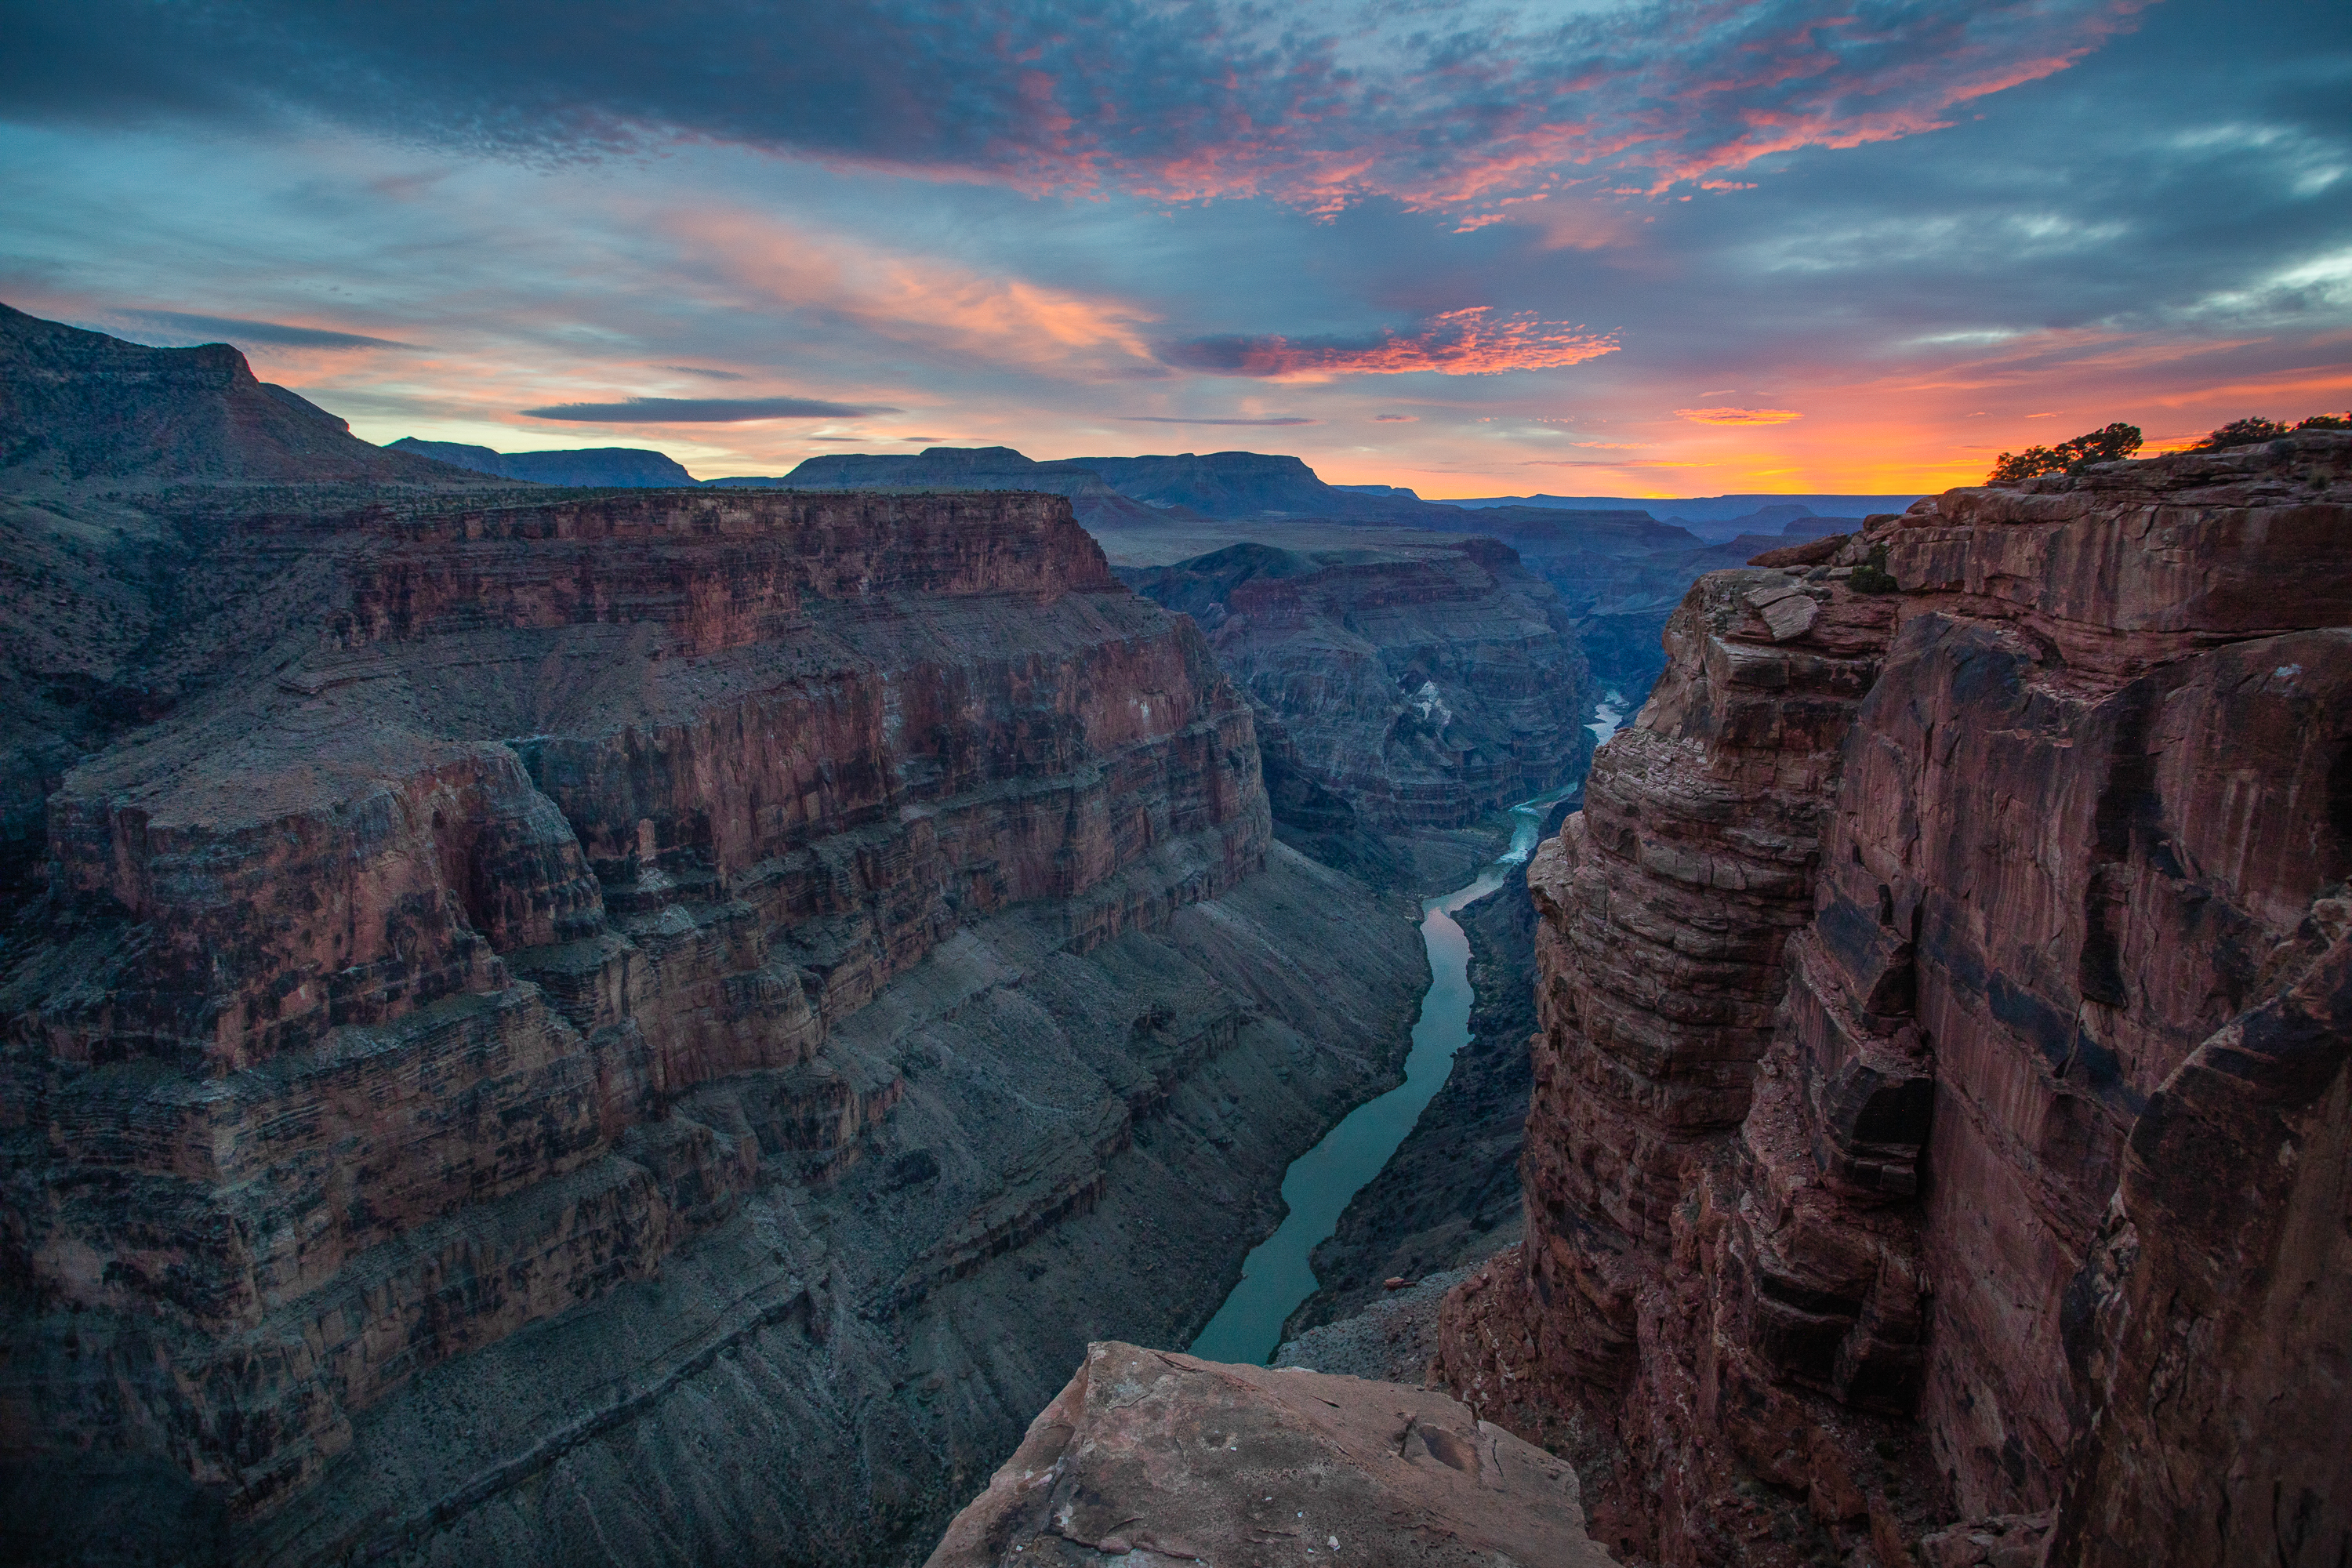 Colorado River through the Grand Canyon | Amy S. Martin